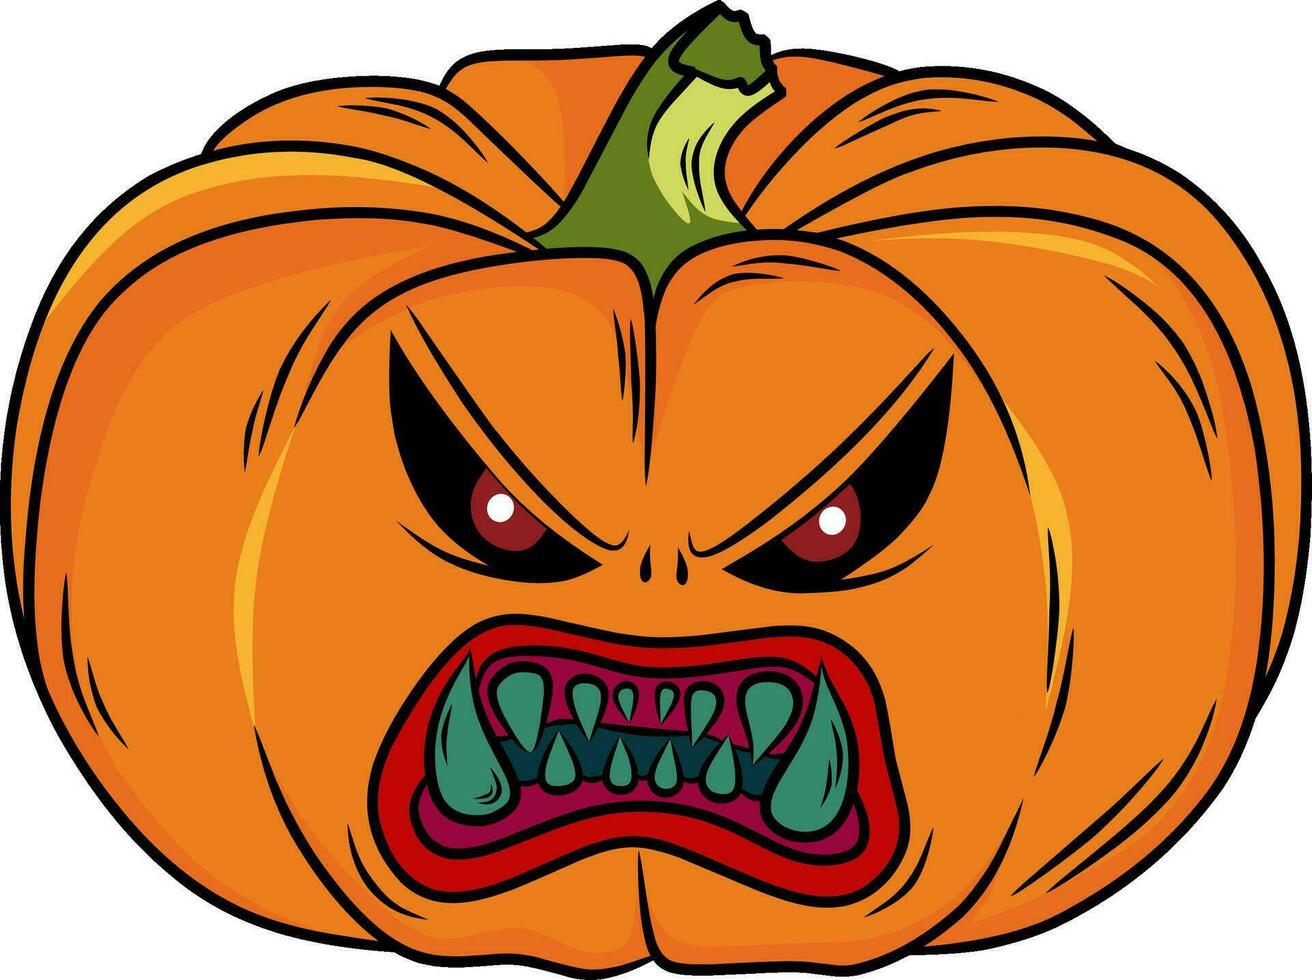 pumpkin hallowen cartoon character vector